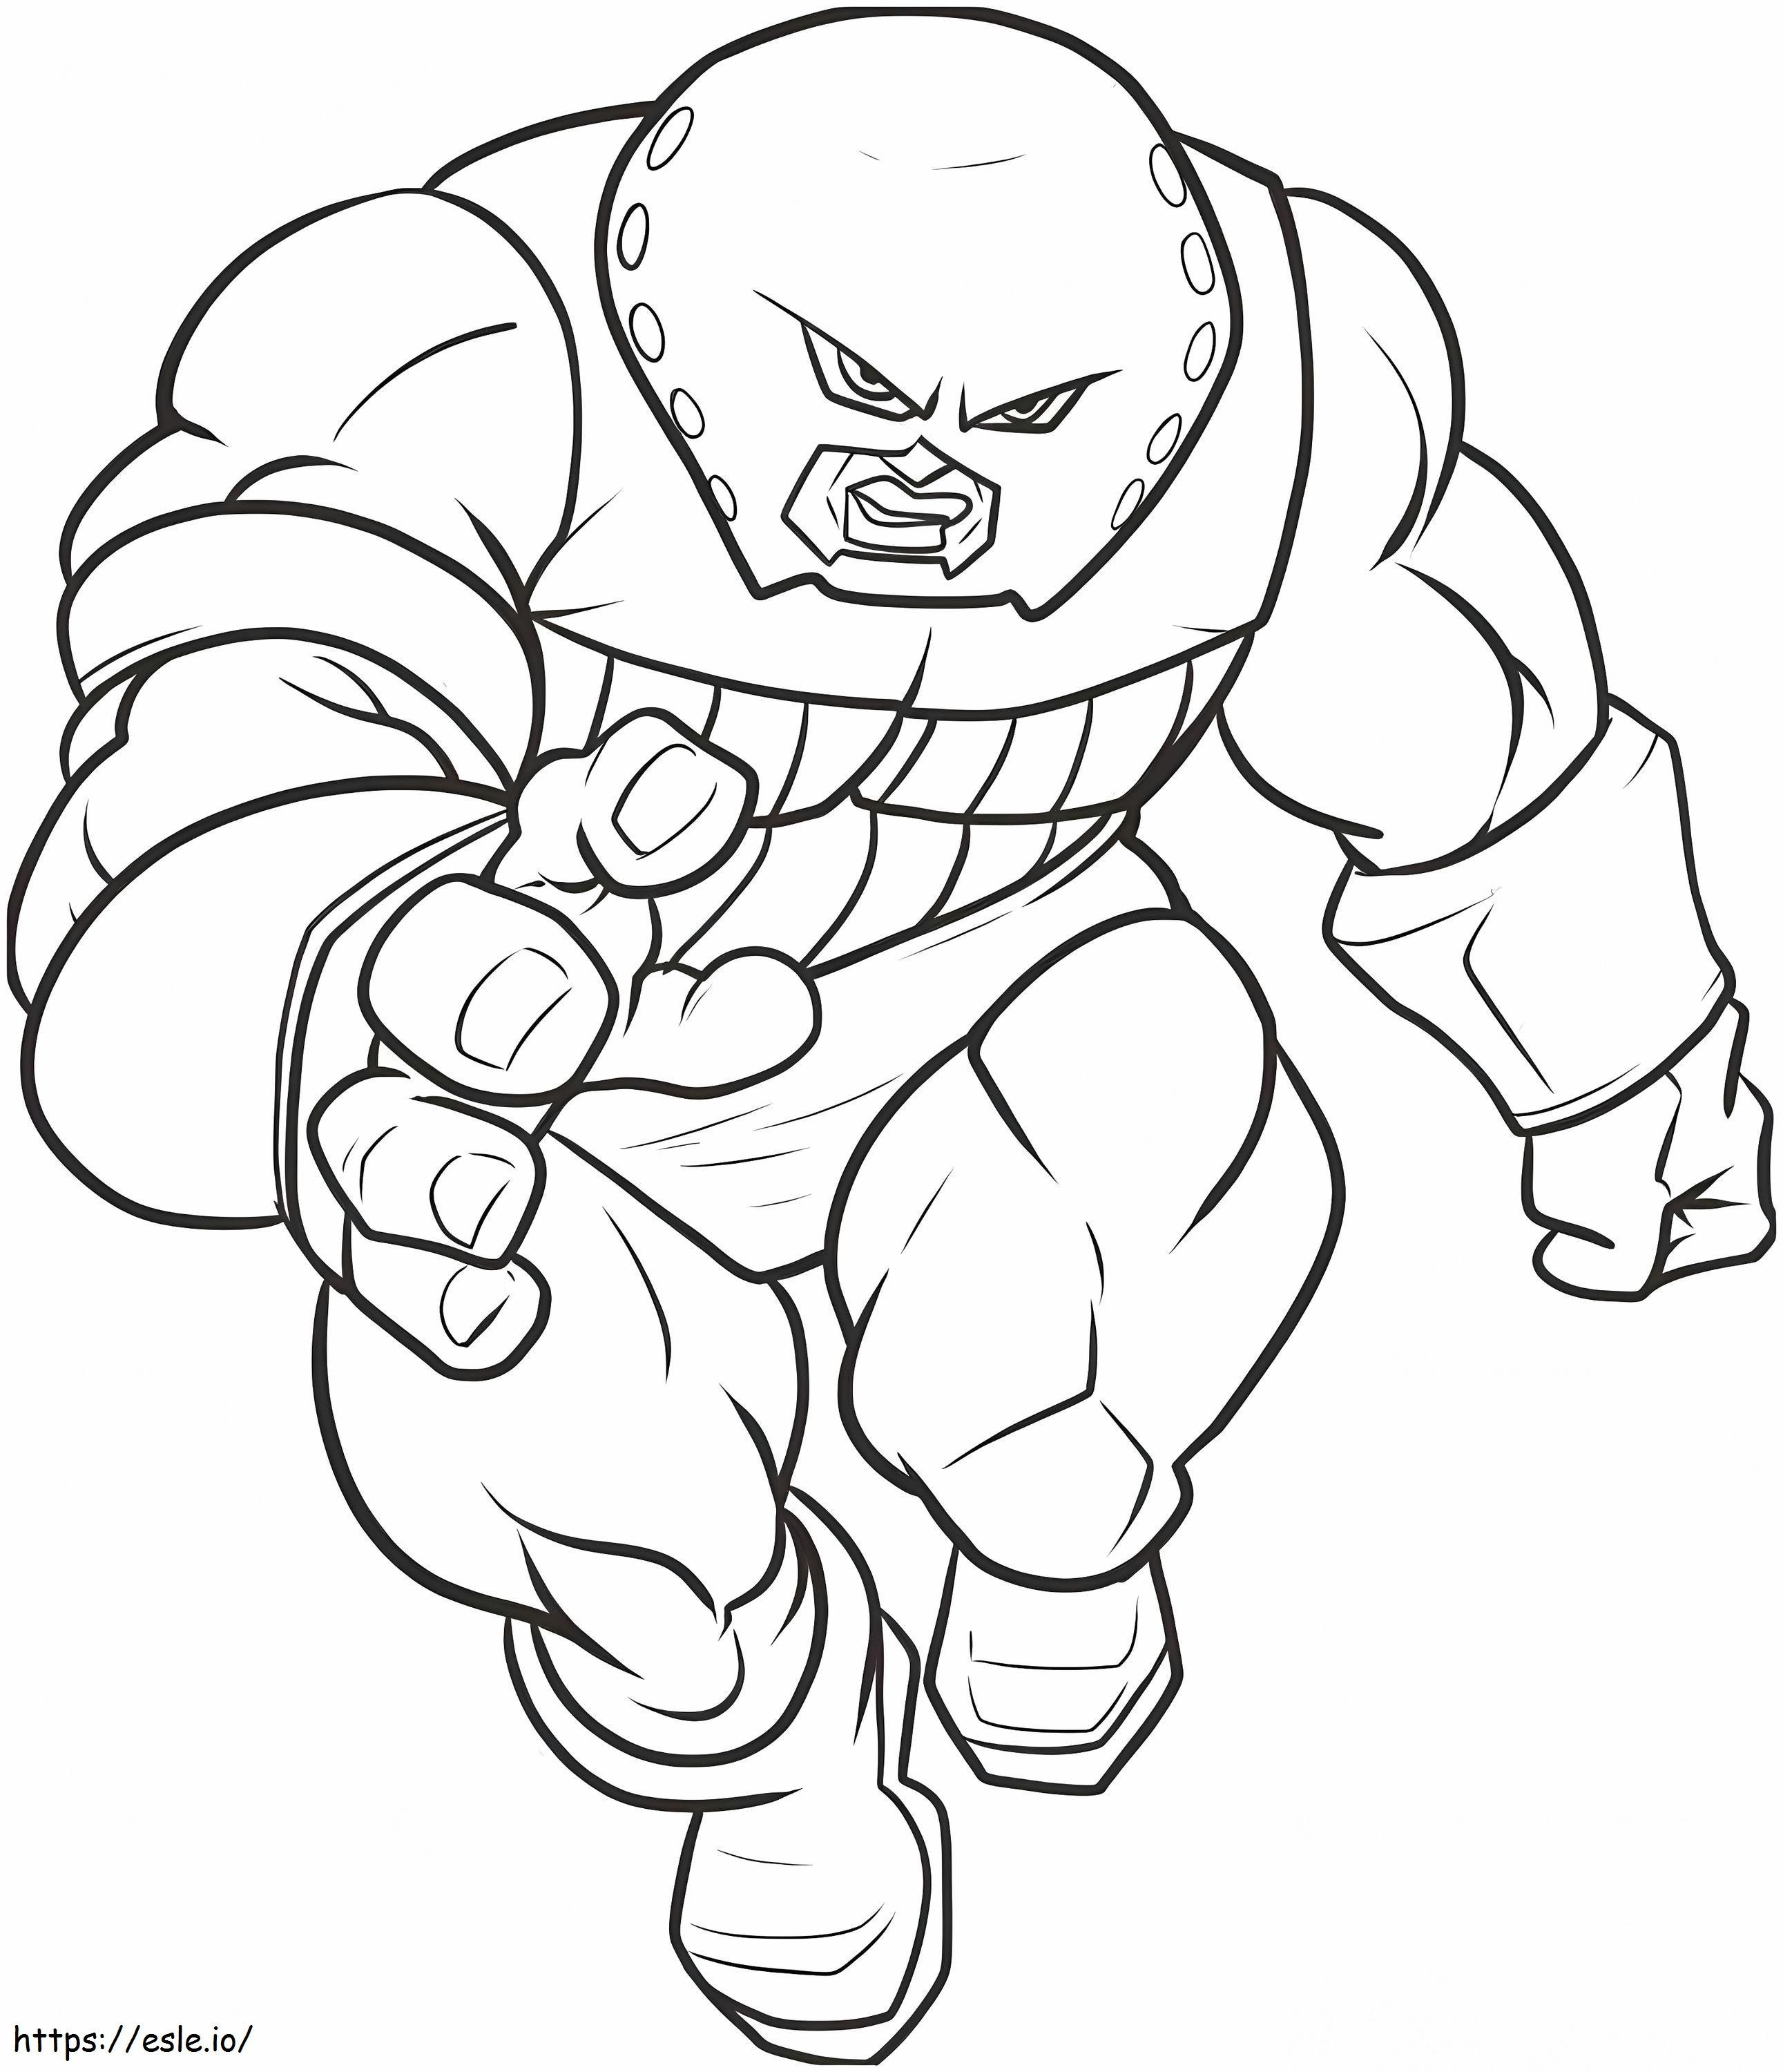 1544839187 Dibujo para colorear libro asombroso cómo dibujar Juggernaut paso a paso personajes de Marvel de dibujo para colorear para colorear